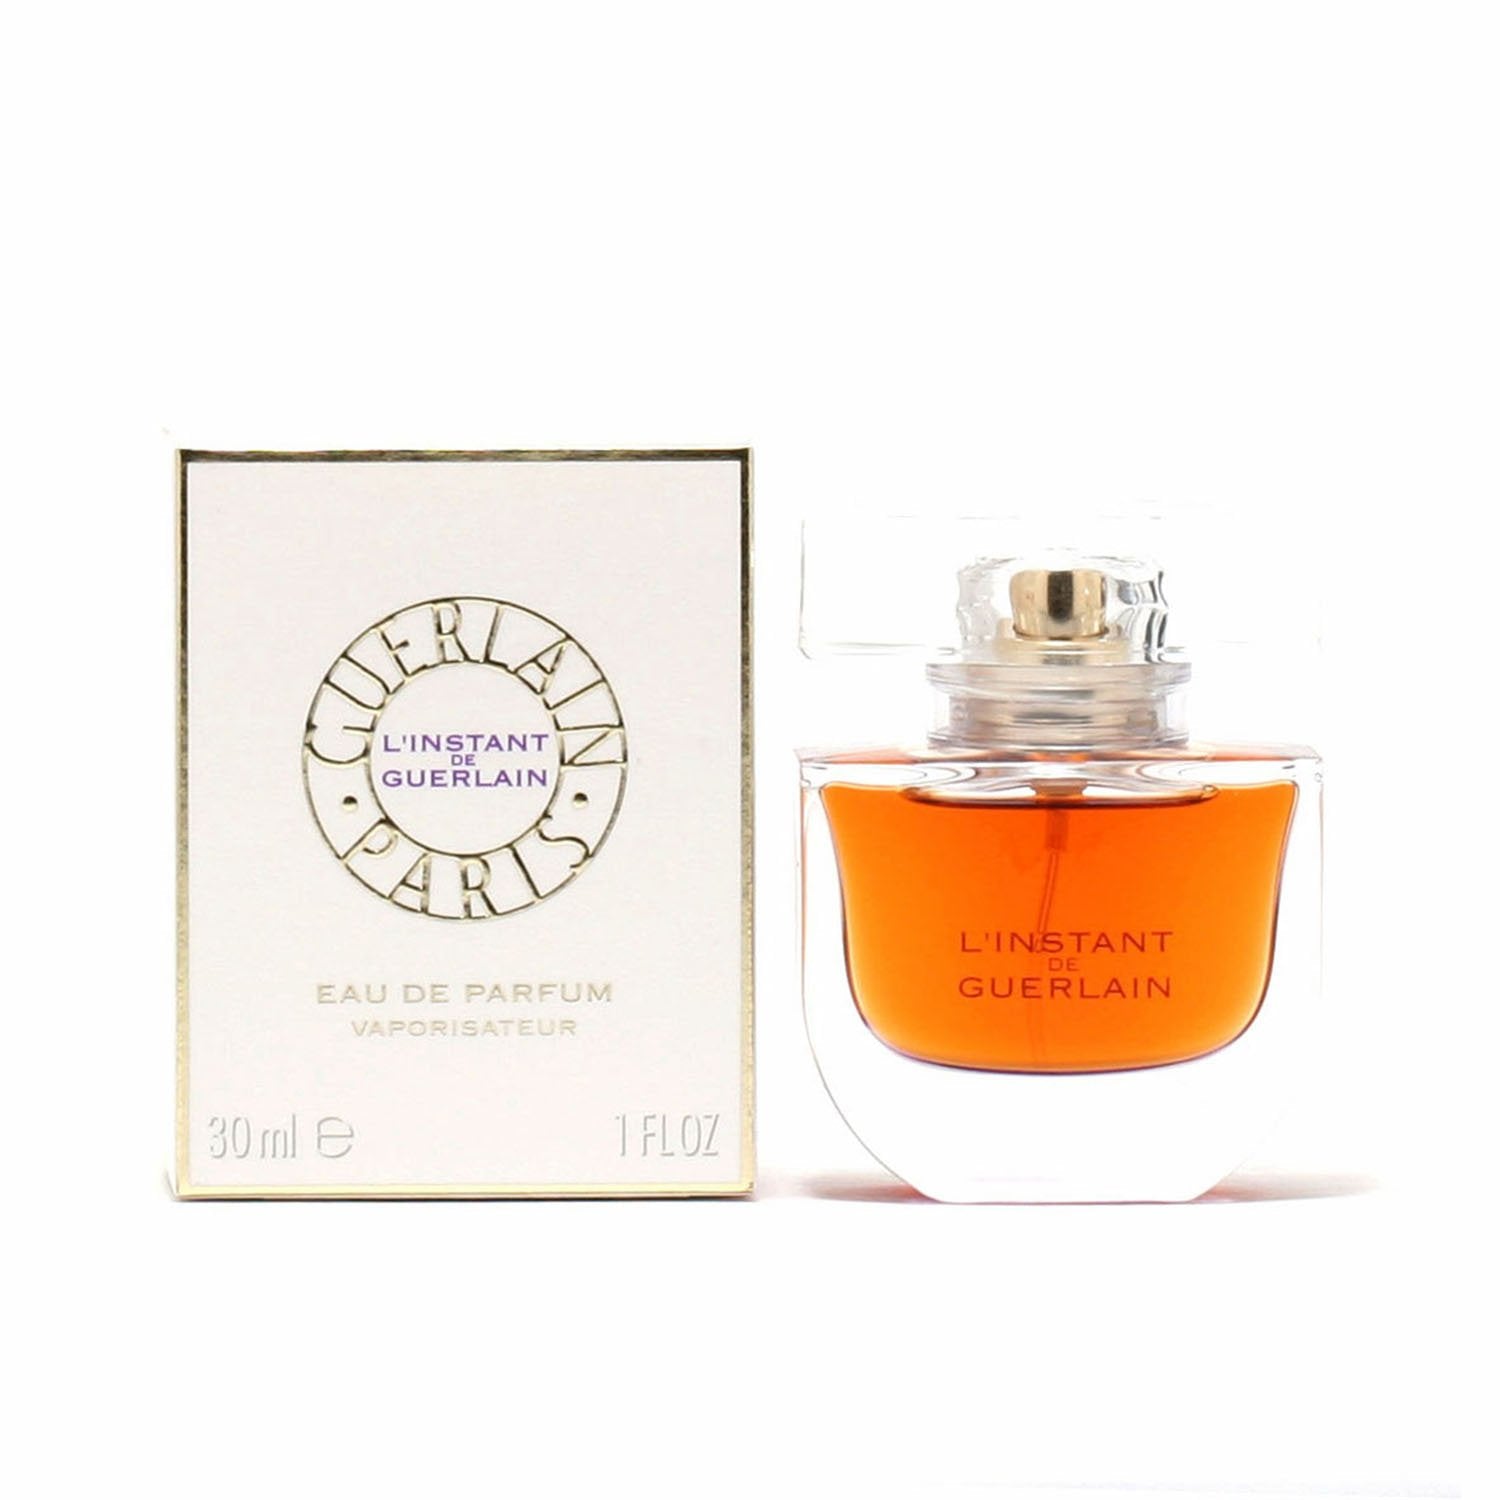 Perfume - L'INSTANT DE GUERLAIN FOR WOMEN BY GUERLAIN - EAU DE PARFUM SPRAY